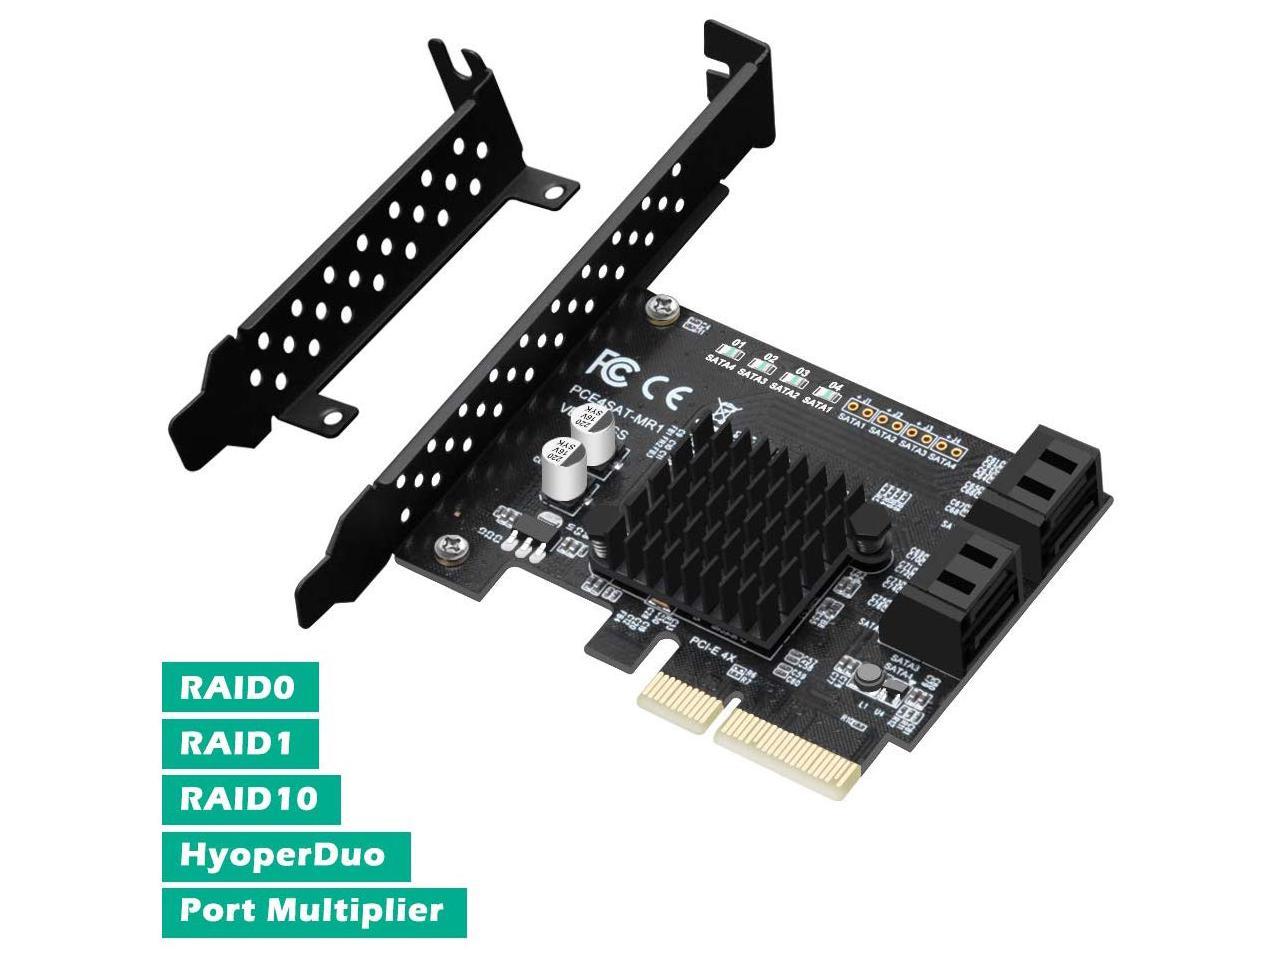 Kalea Informatique PCI-Express-Karte 4 Ports SATA 3, Chipsatz Marvell 88SE9230, Raid 0 / 1 / 10